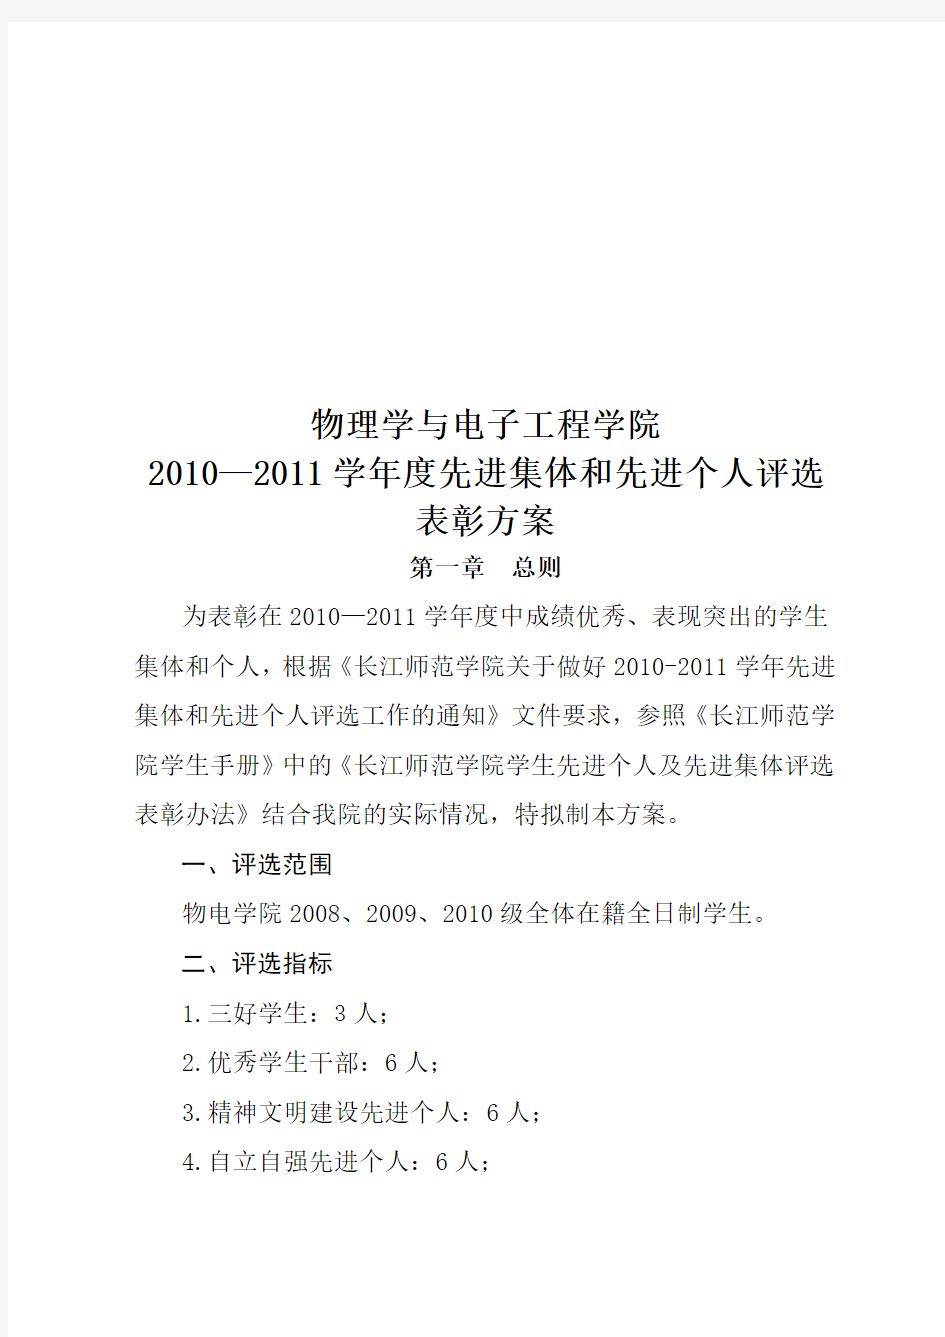 长江师范学院2010—2011学年度先进集体和先进个人评选评优方案